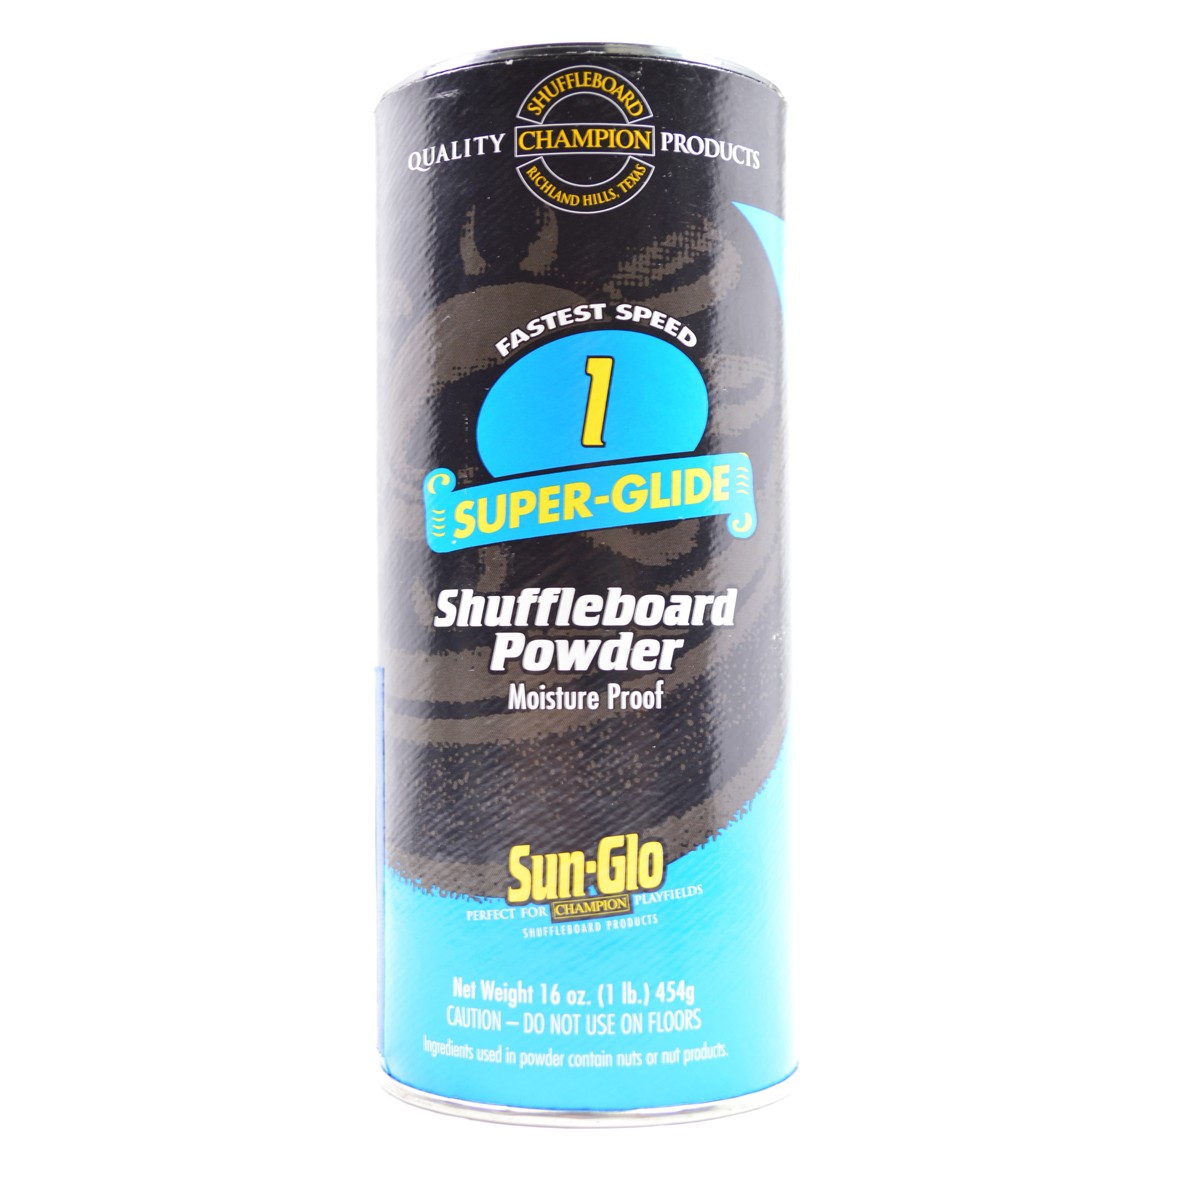 22-129 Sun-glo Speed 1 Shuffleboard Powder